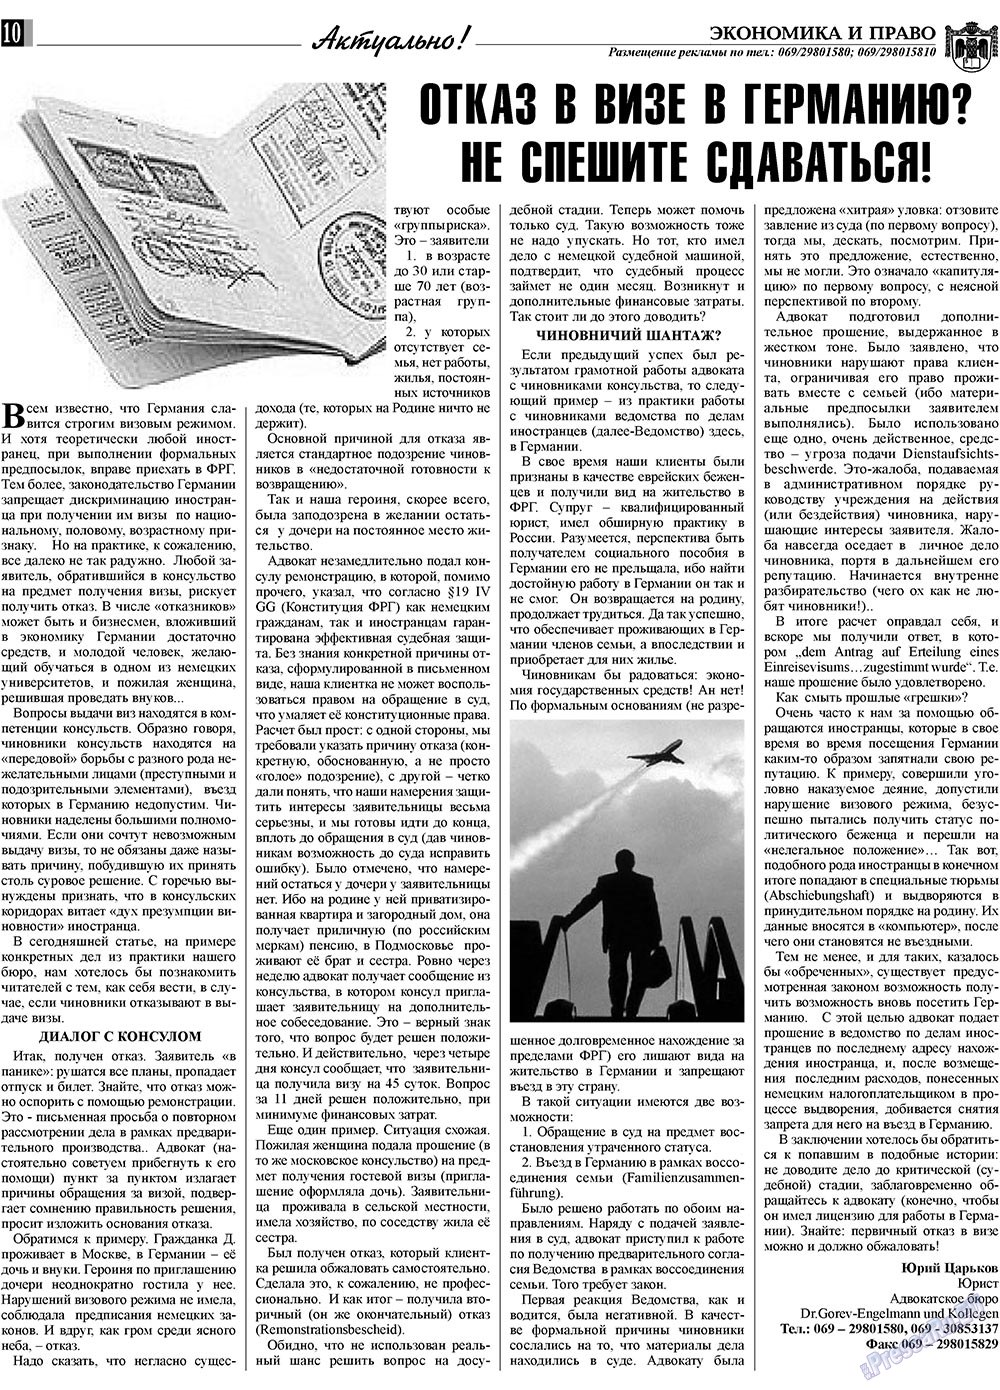 Экономика и право, газета. 2009 №3 стр.10